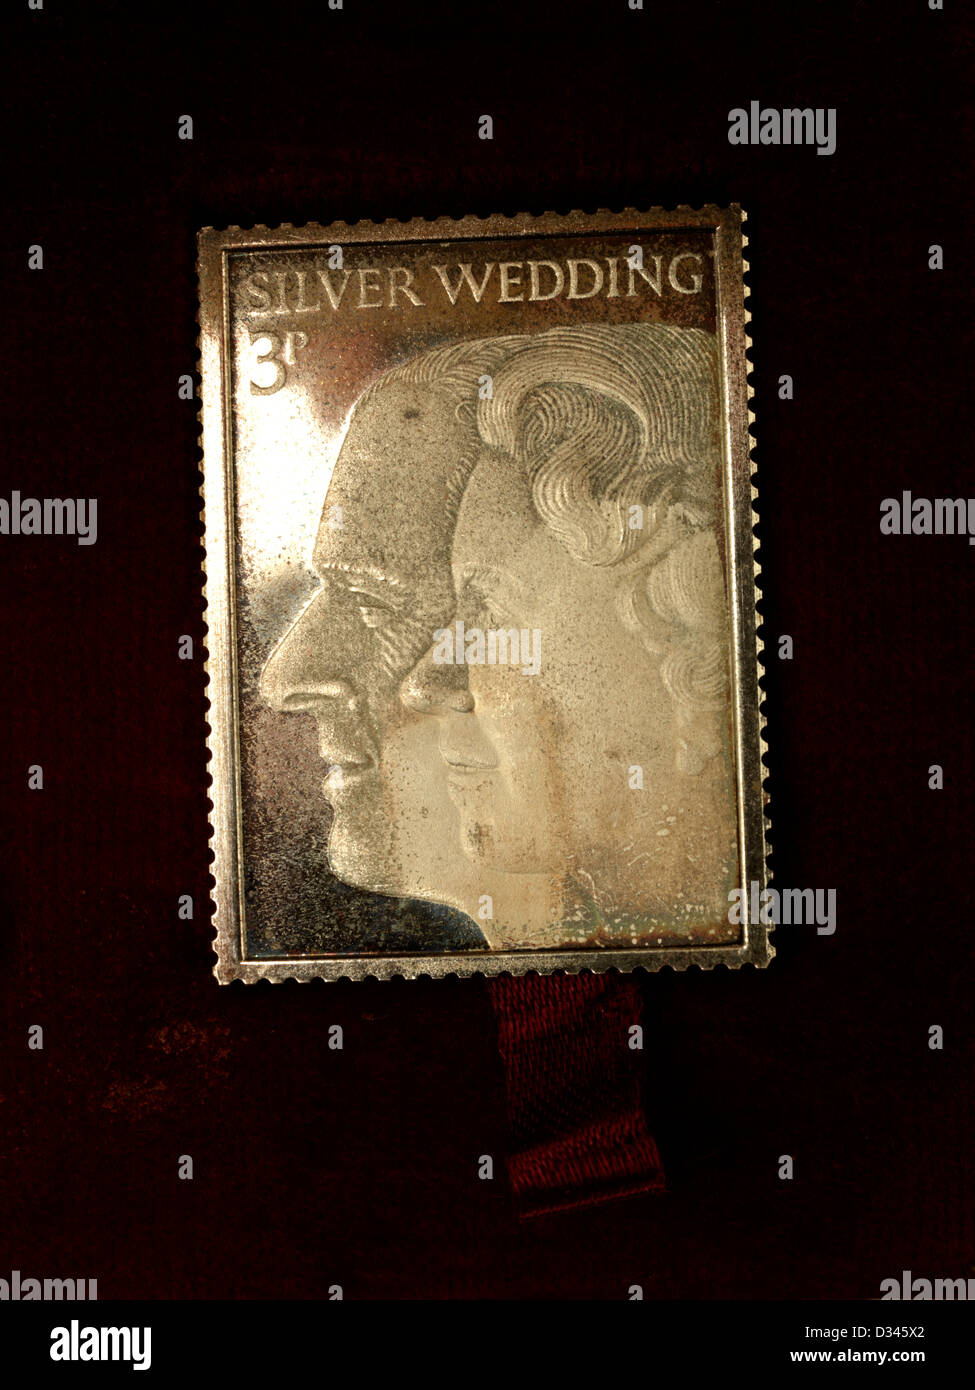 Silber Stempel zum Gedenken an Königin Elizabeth II und der Herzog von Edinburgh Silberhochzeit Jahrestag Markenzeichen Replica Stockfoto